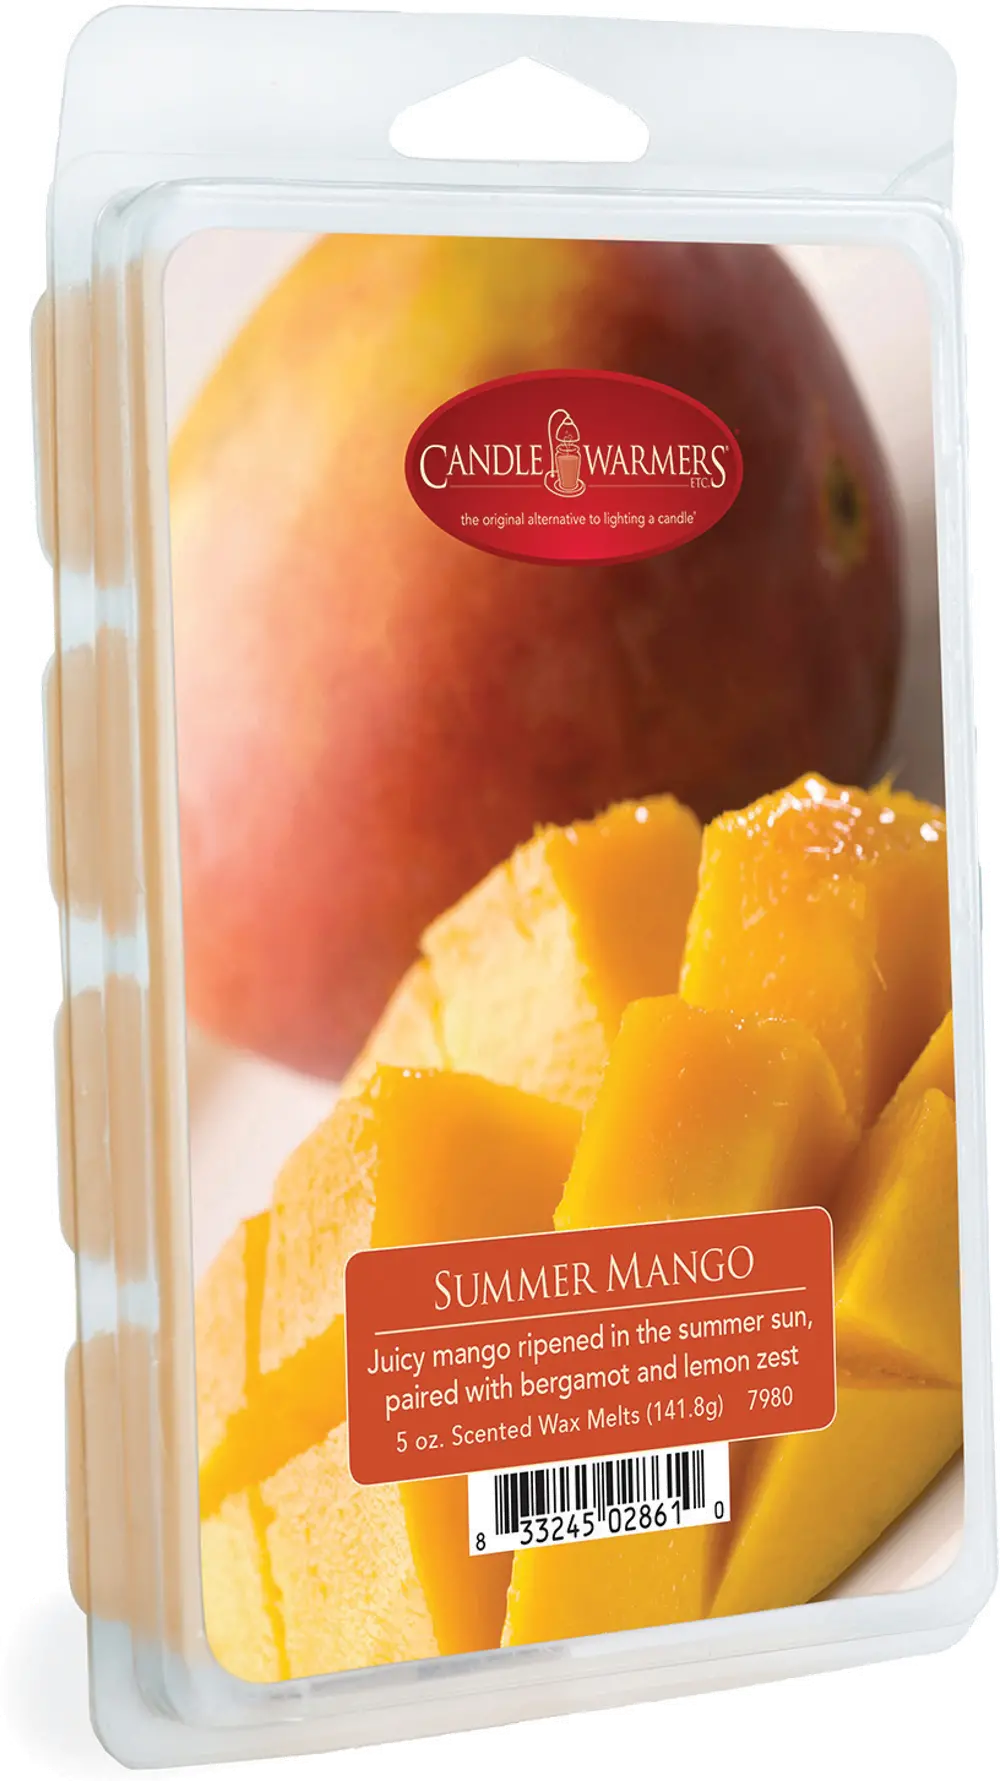 Summer Mango 5oz Wax Melt - Candle Warmers-1